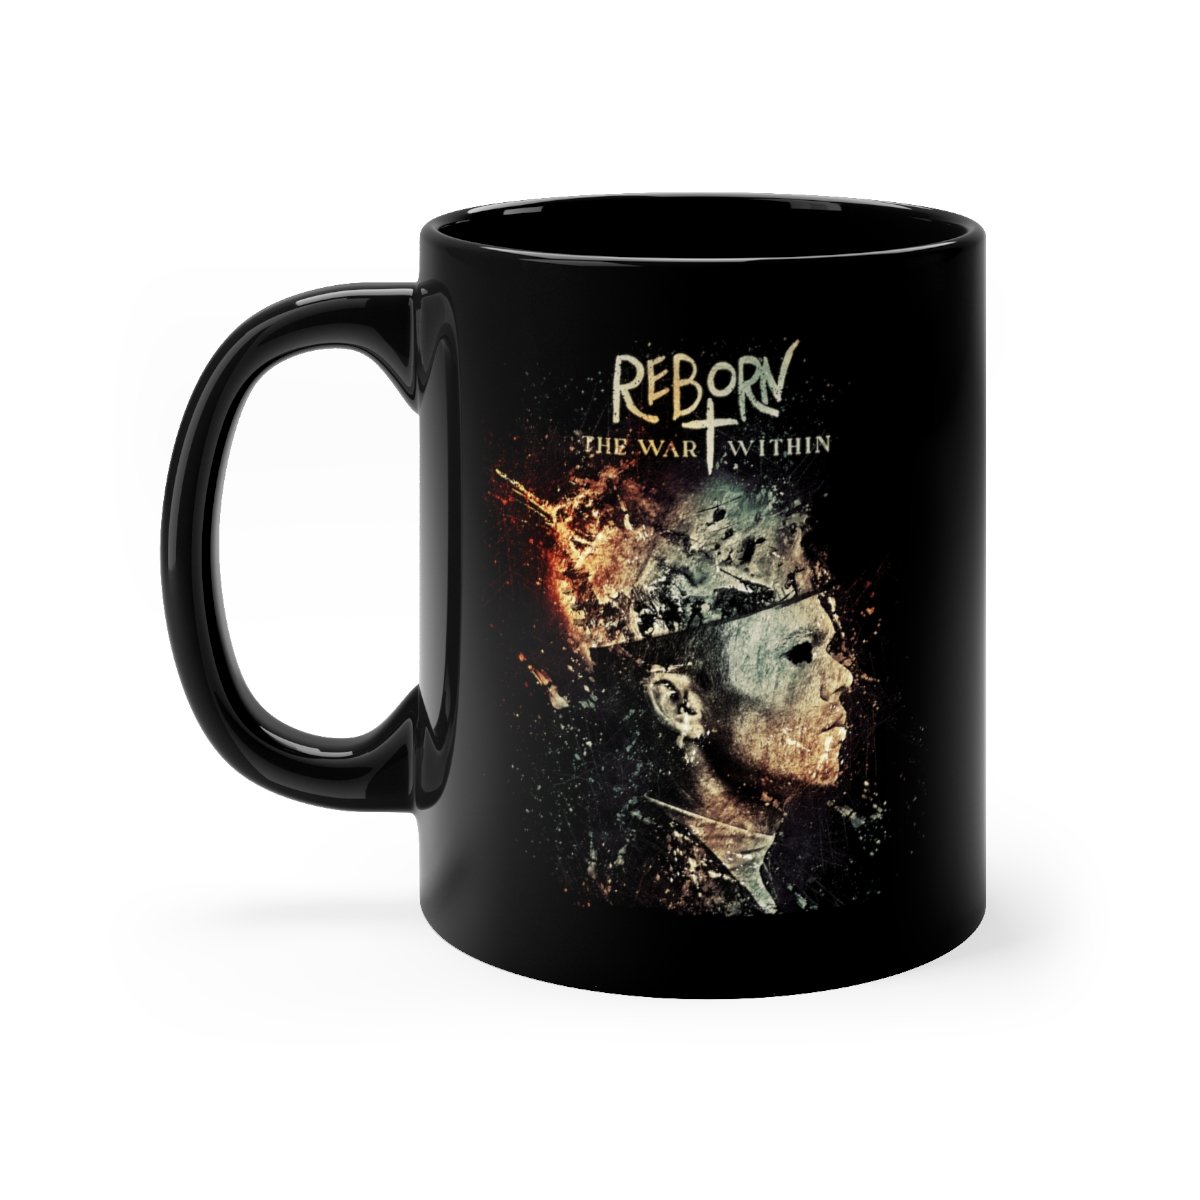 Reborn – The War Within  11oz Black mug